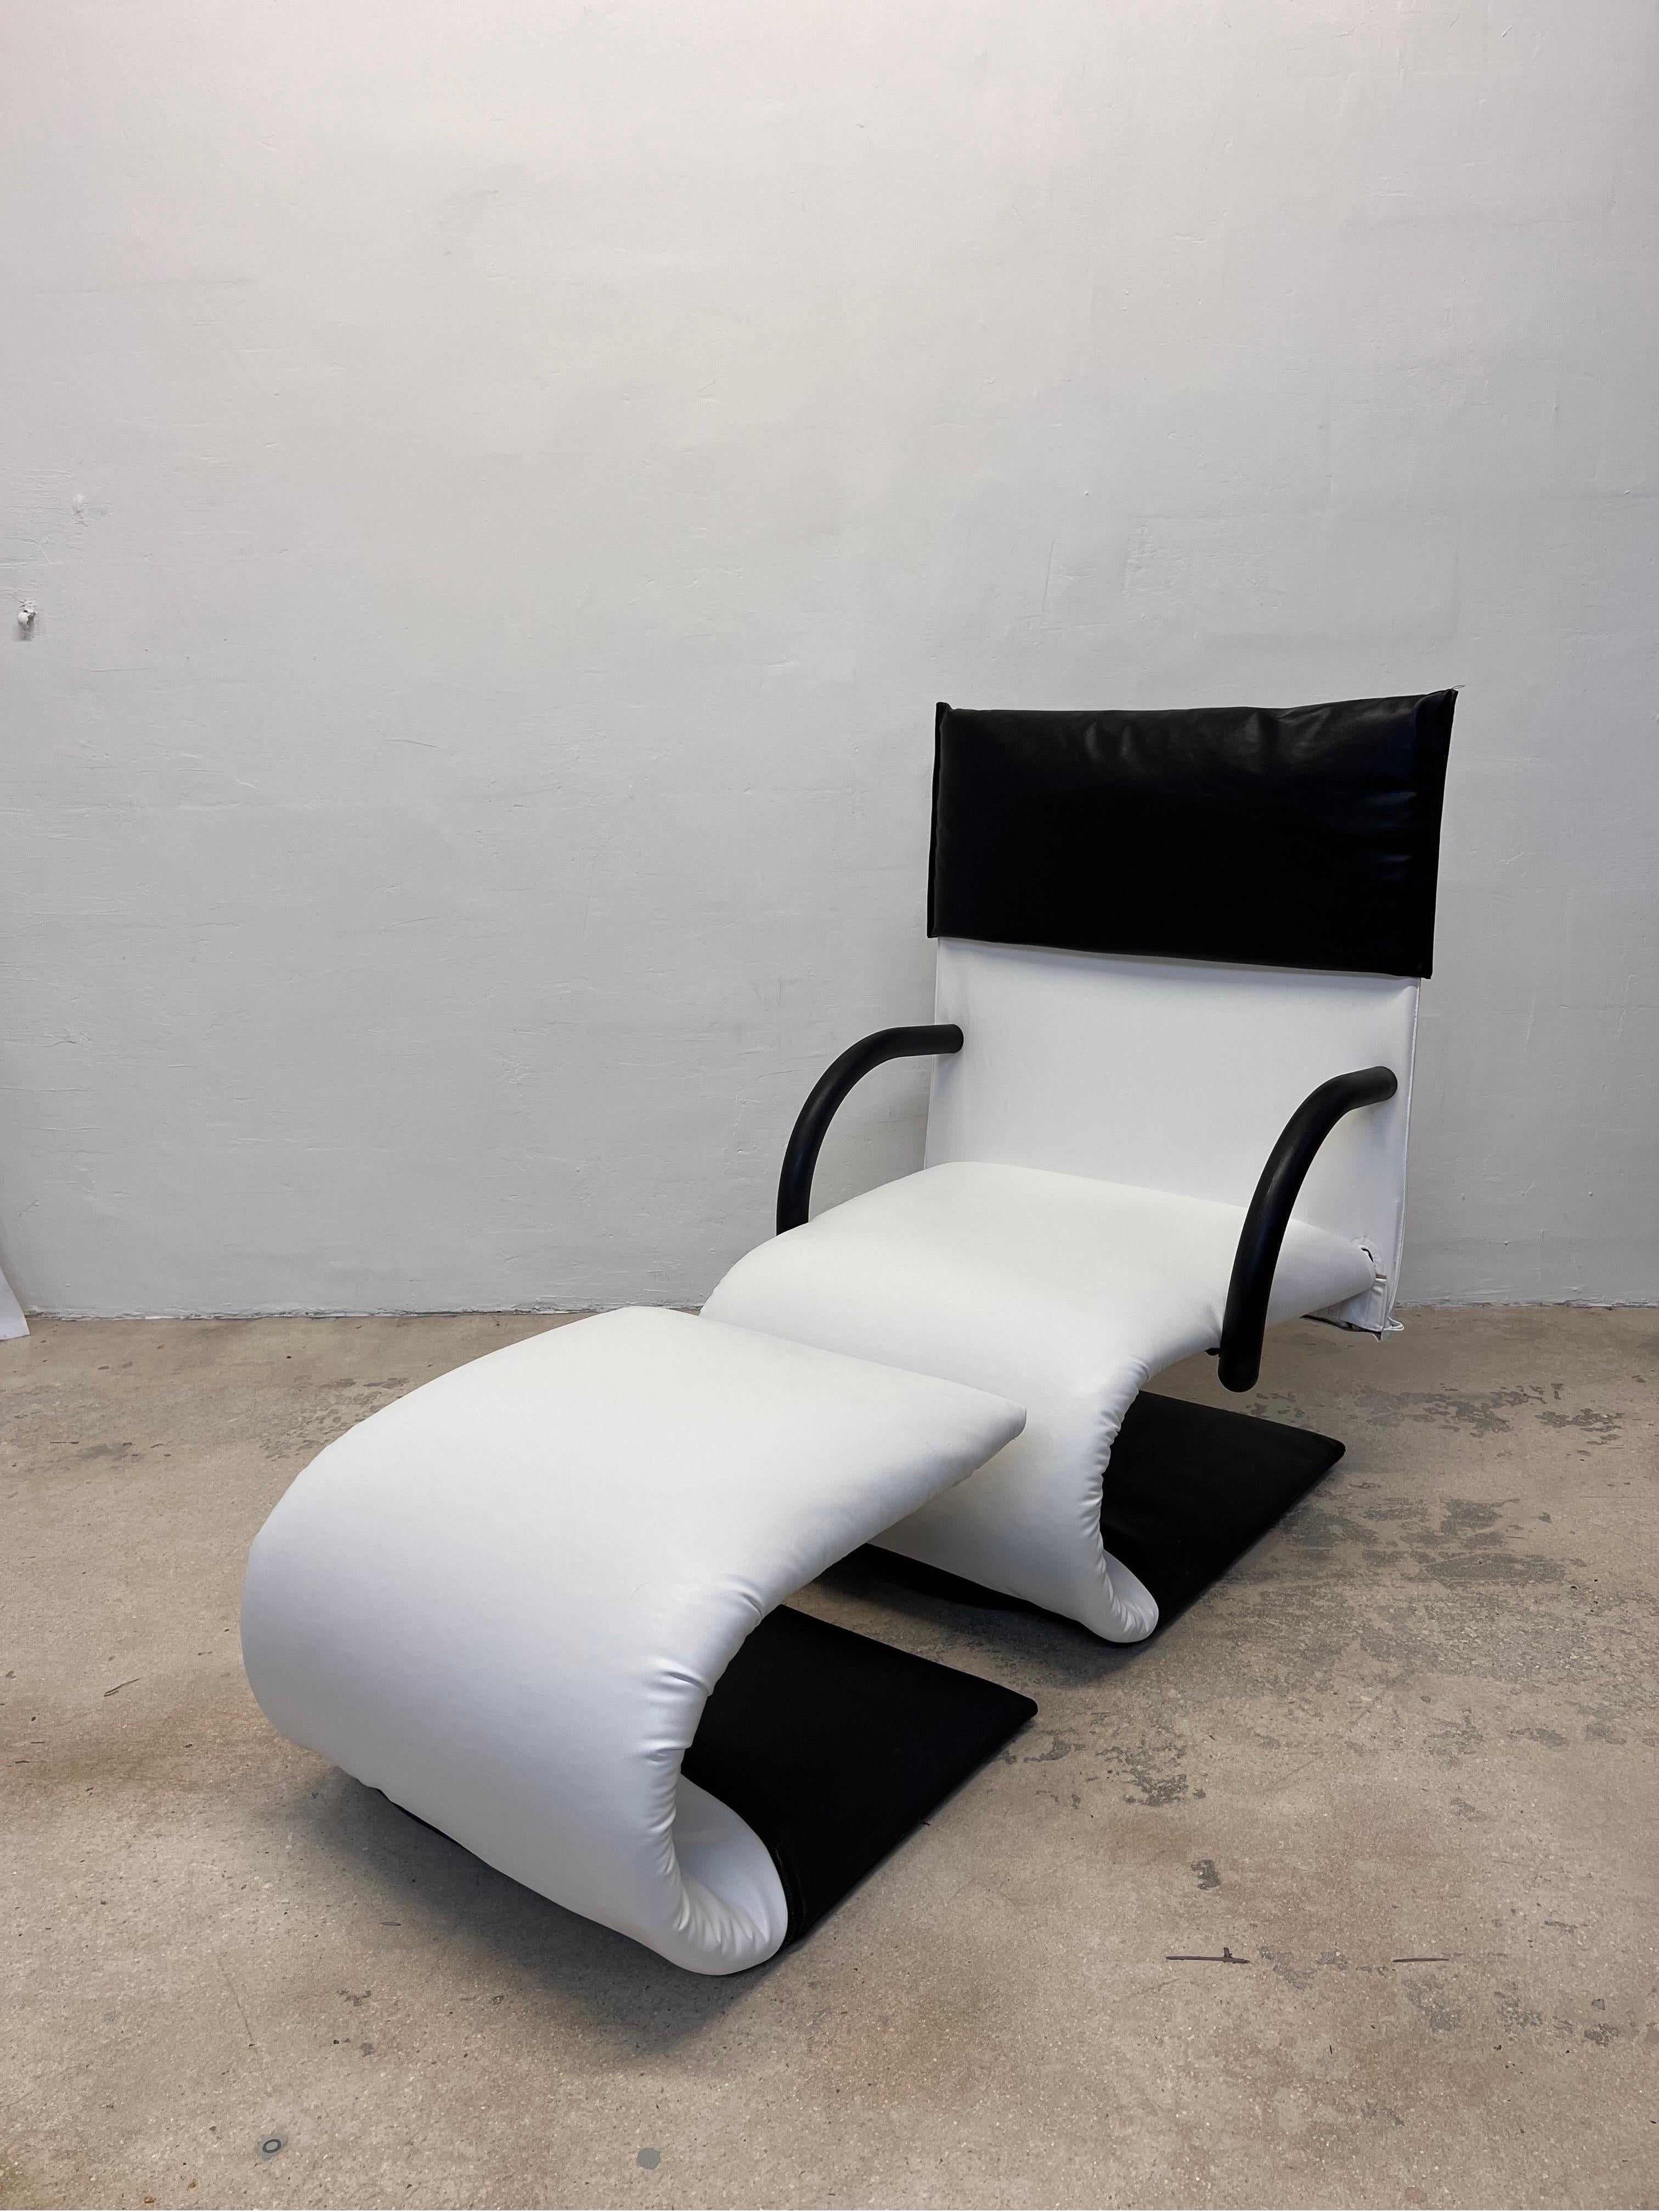 Postmoderner Zen-Sessel mit Fußstütze von Claude Brisson für Ligne Roset, Frankreich 1980er Jahre. Mit schwarzem und weißem veganem Lederbezug und schwarzem, abnehmbarem Kopfstützenschutz.

Dieses Set wurde neu mit veganem Leder von Vegan Lthr